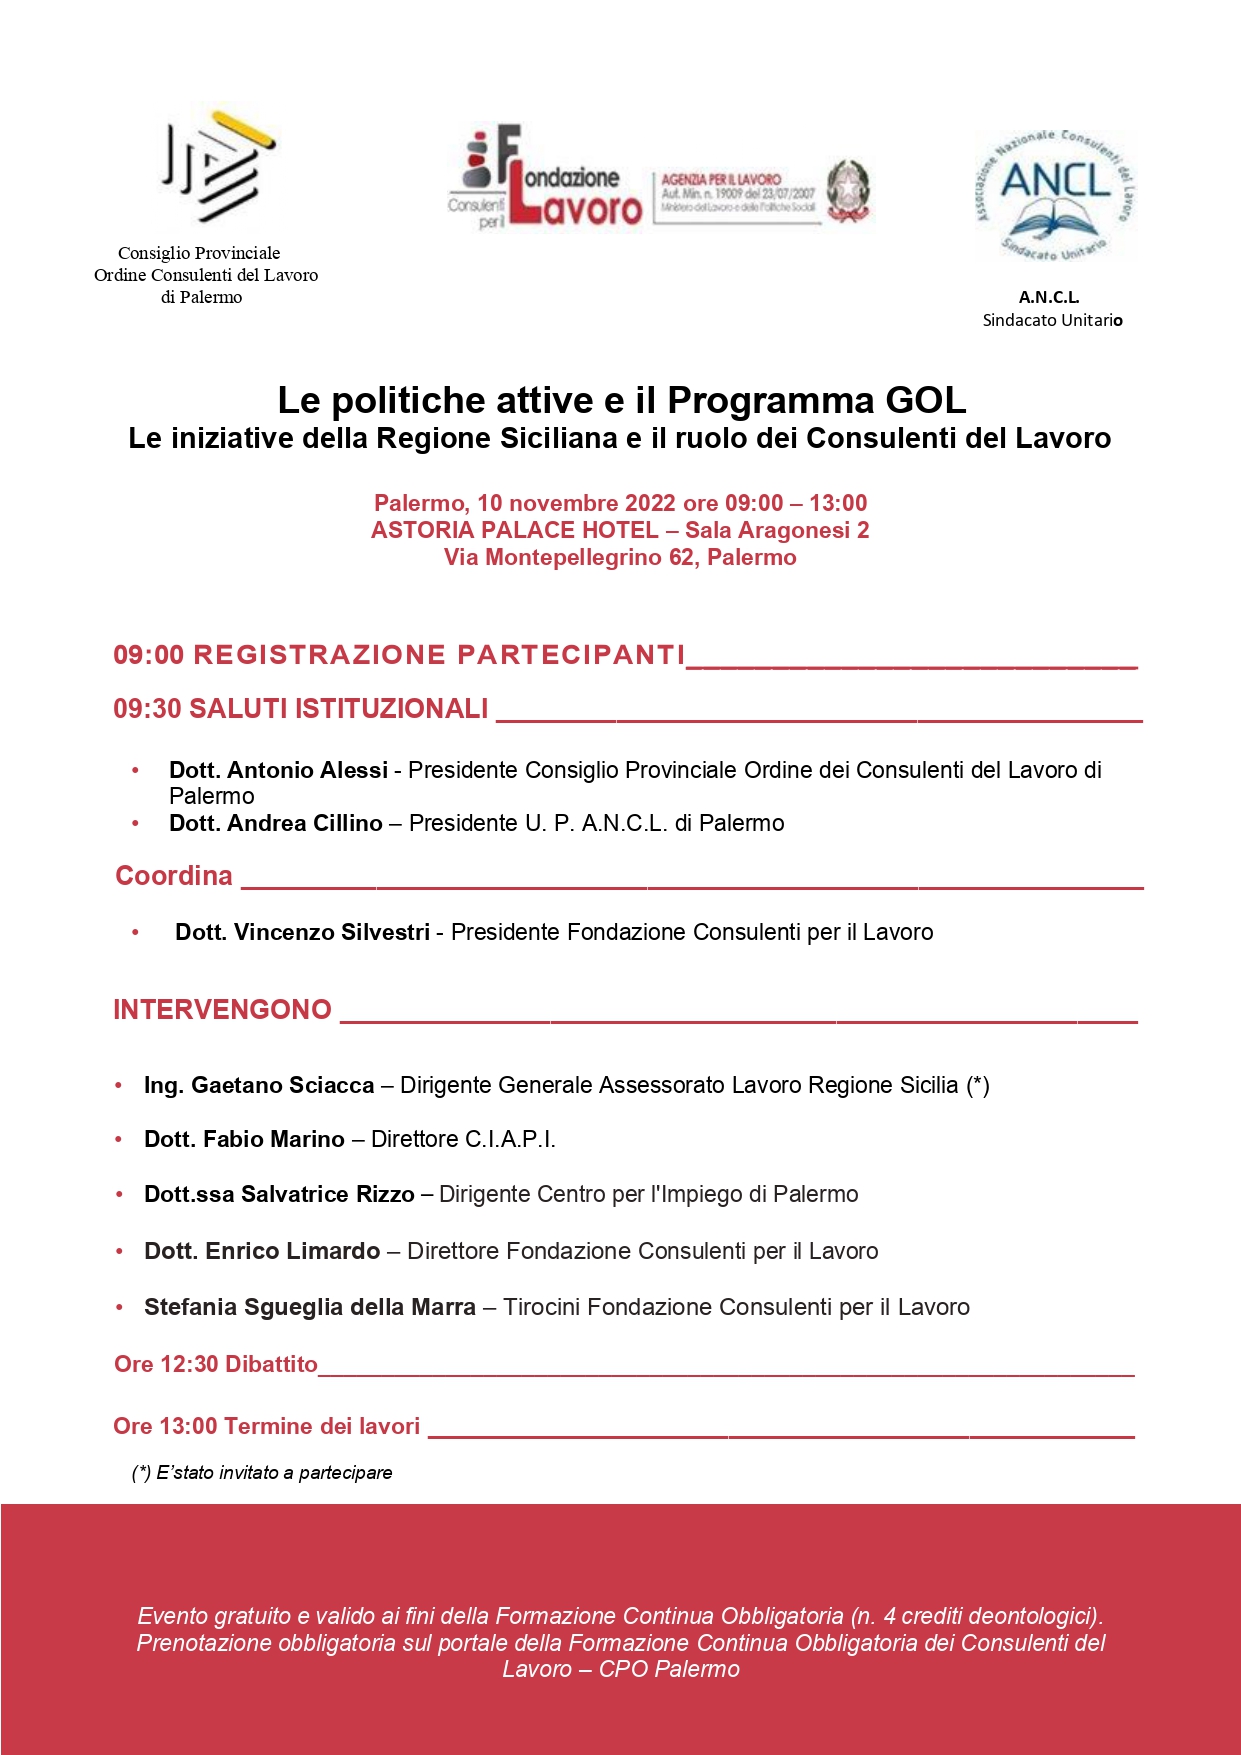 Le Politiche Attive e il Programma GOL. Le iniziative della Regione Siciliana e il ruolo dei Consulenti del Lavoro Palermo 10 novembre 2022 ore 09:00-13:00